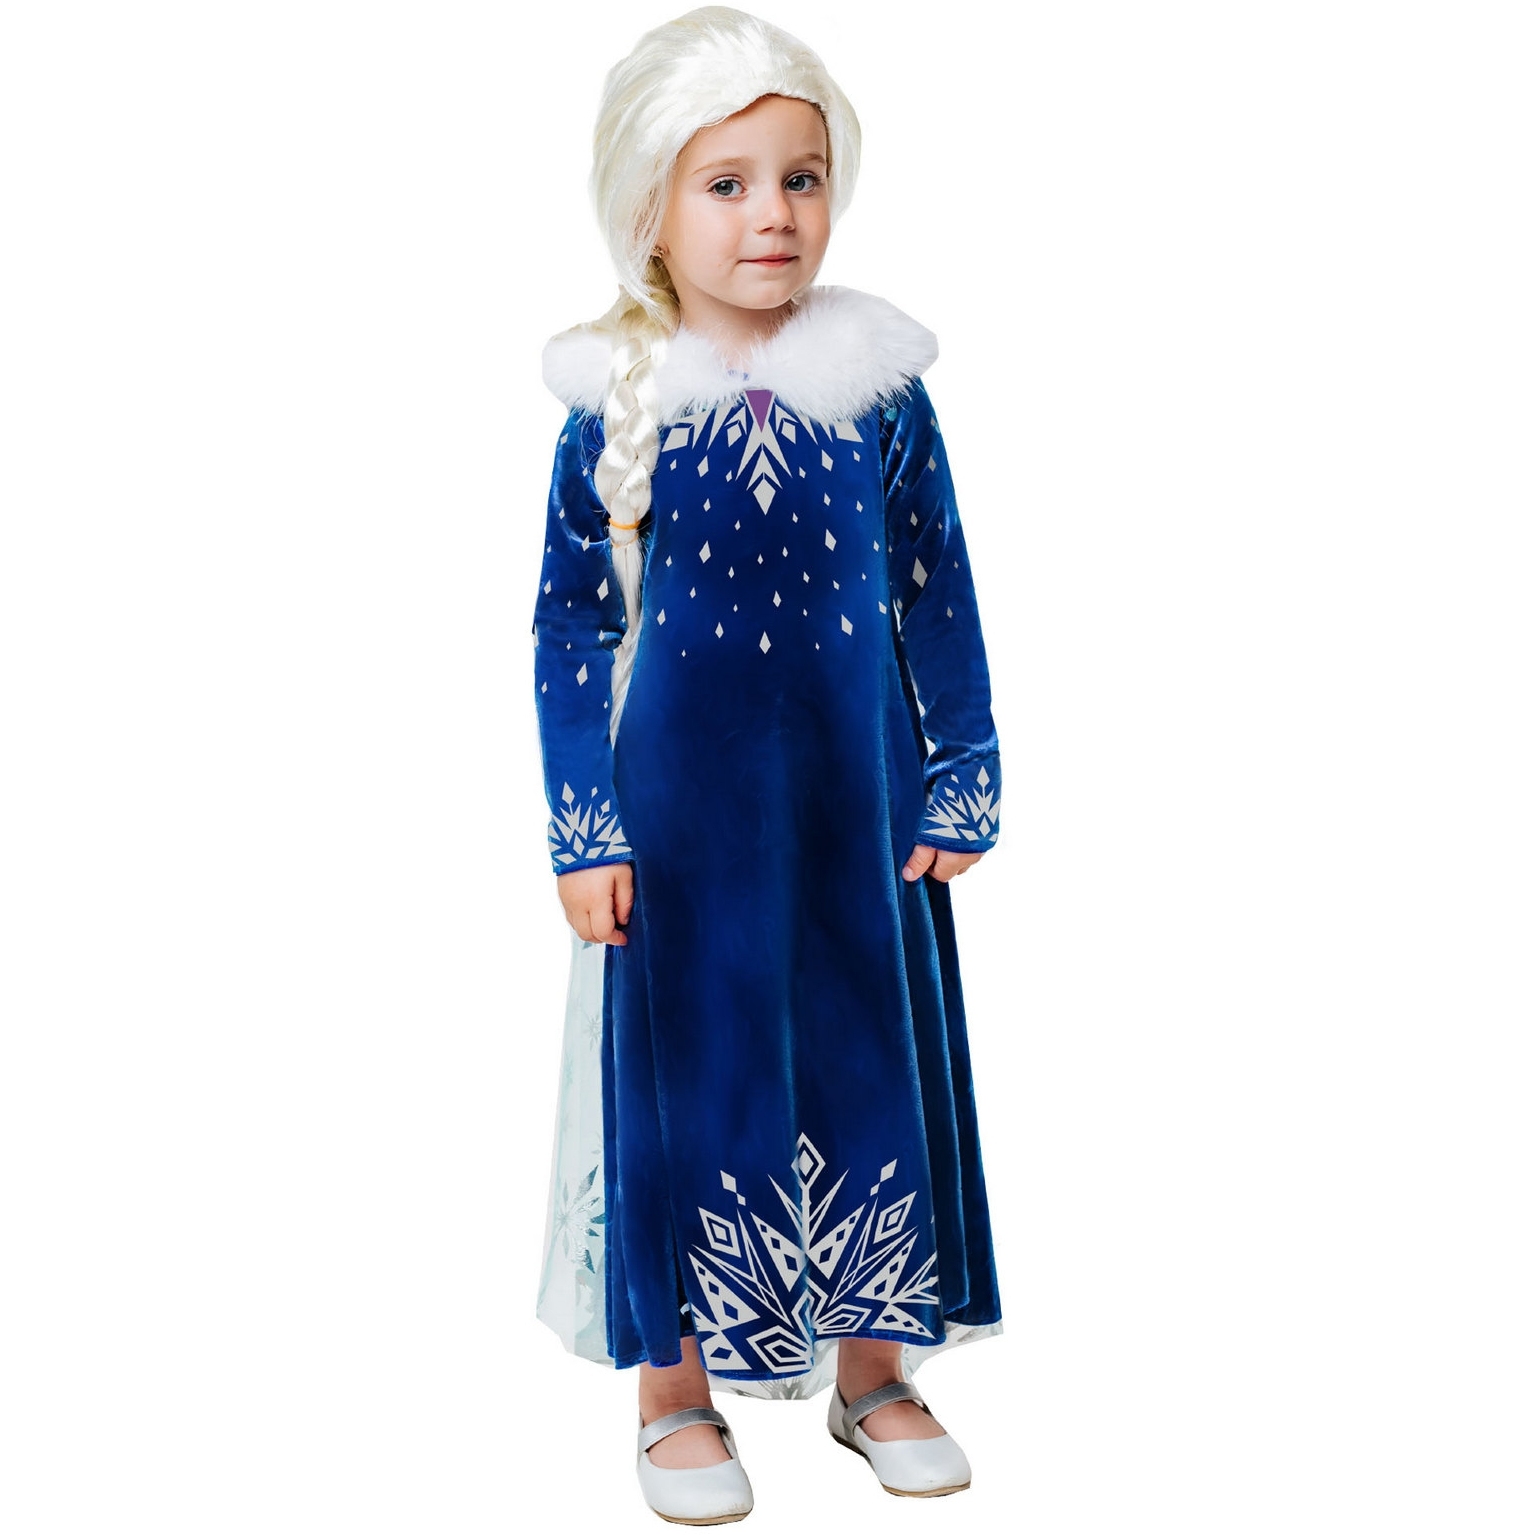 Карнавальный костюм "Эльза зимнее платье" (платье с накидкой, парик) размер 116-60